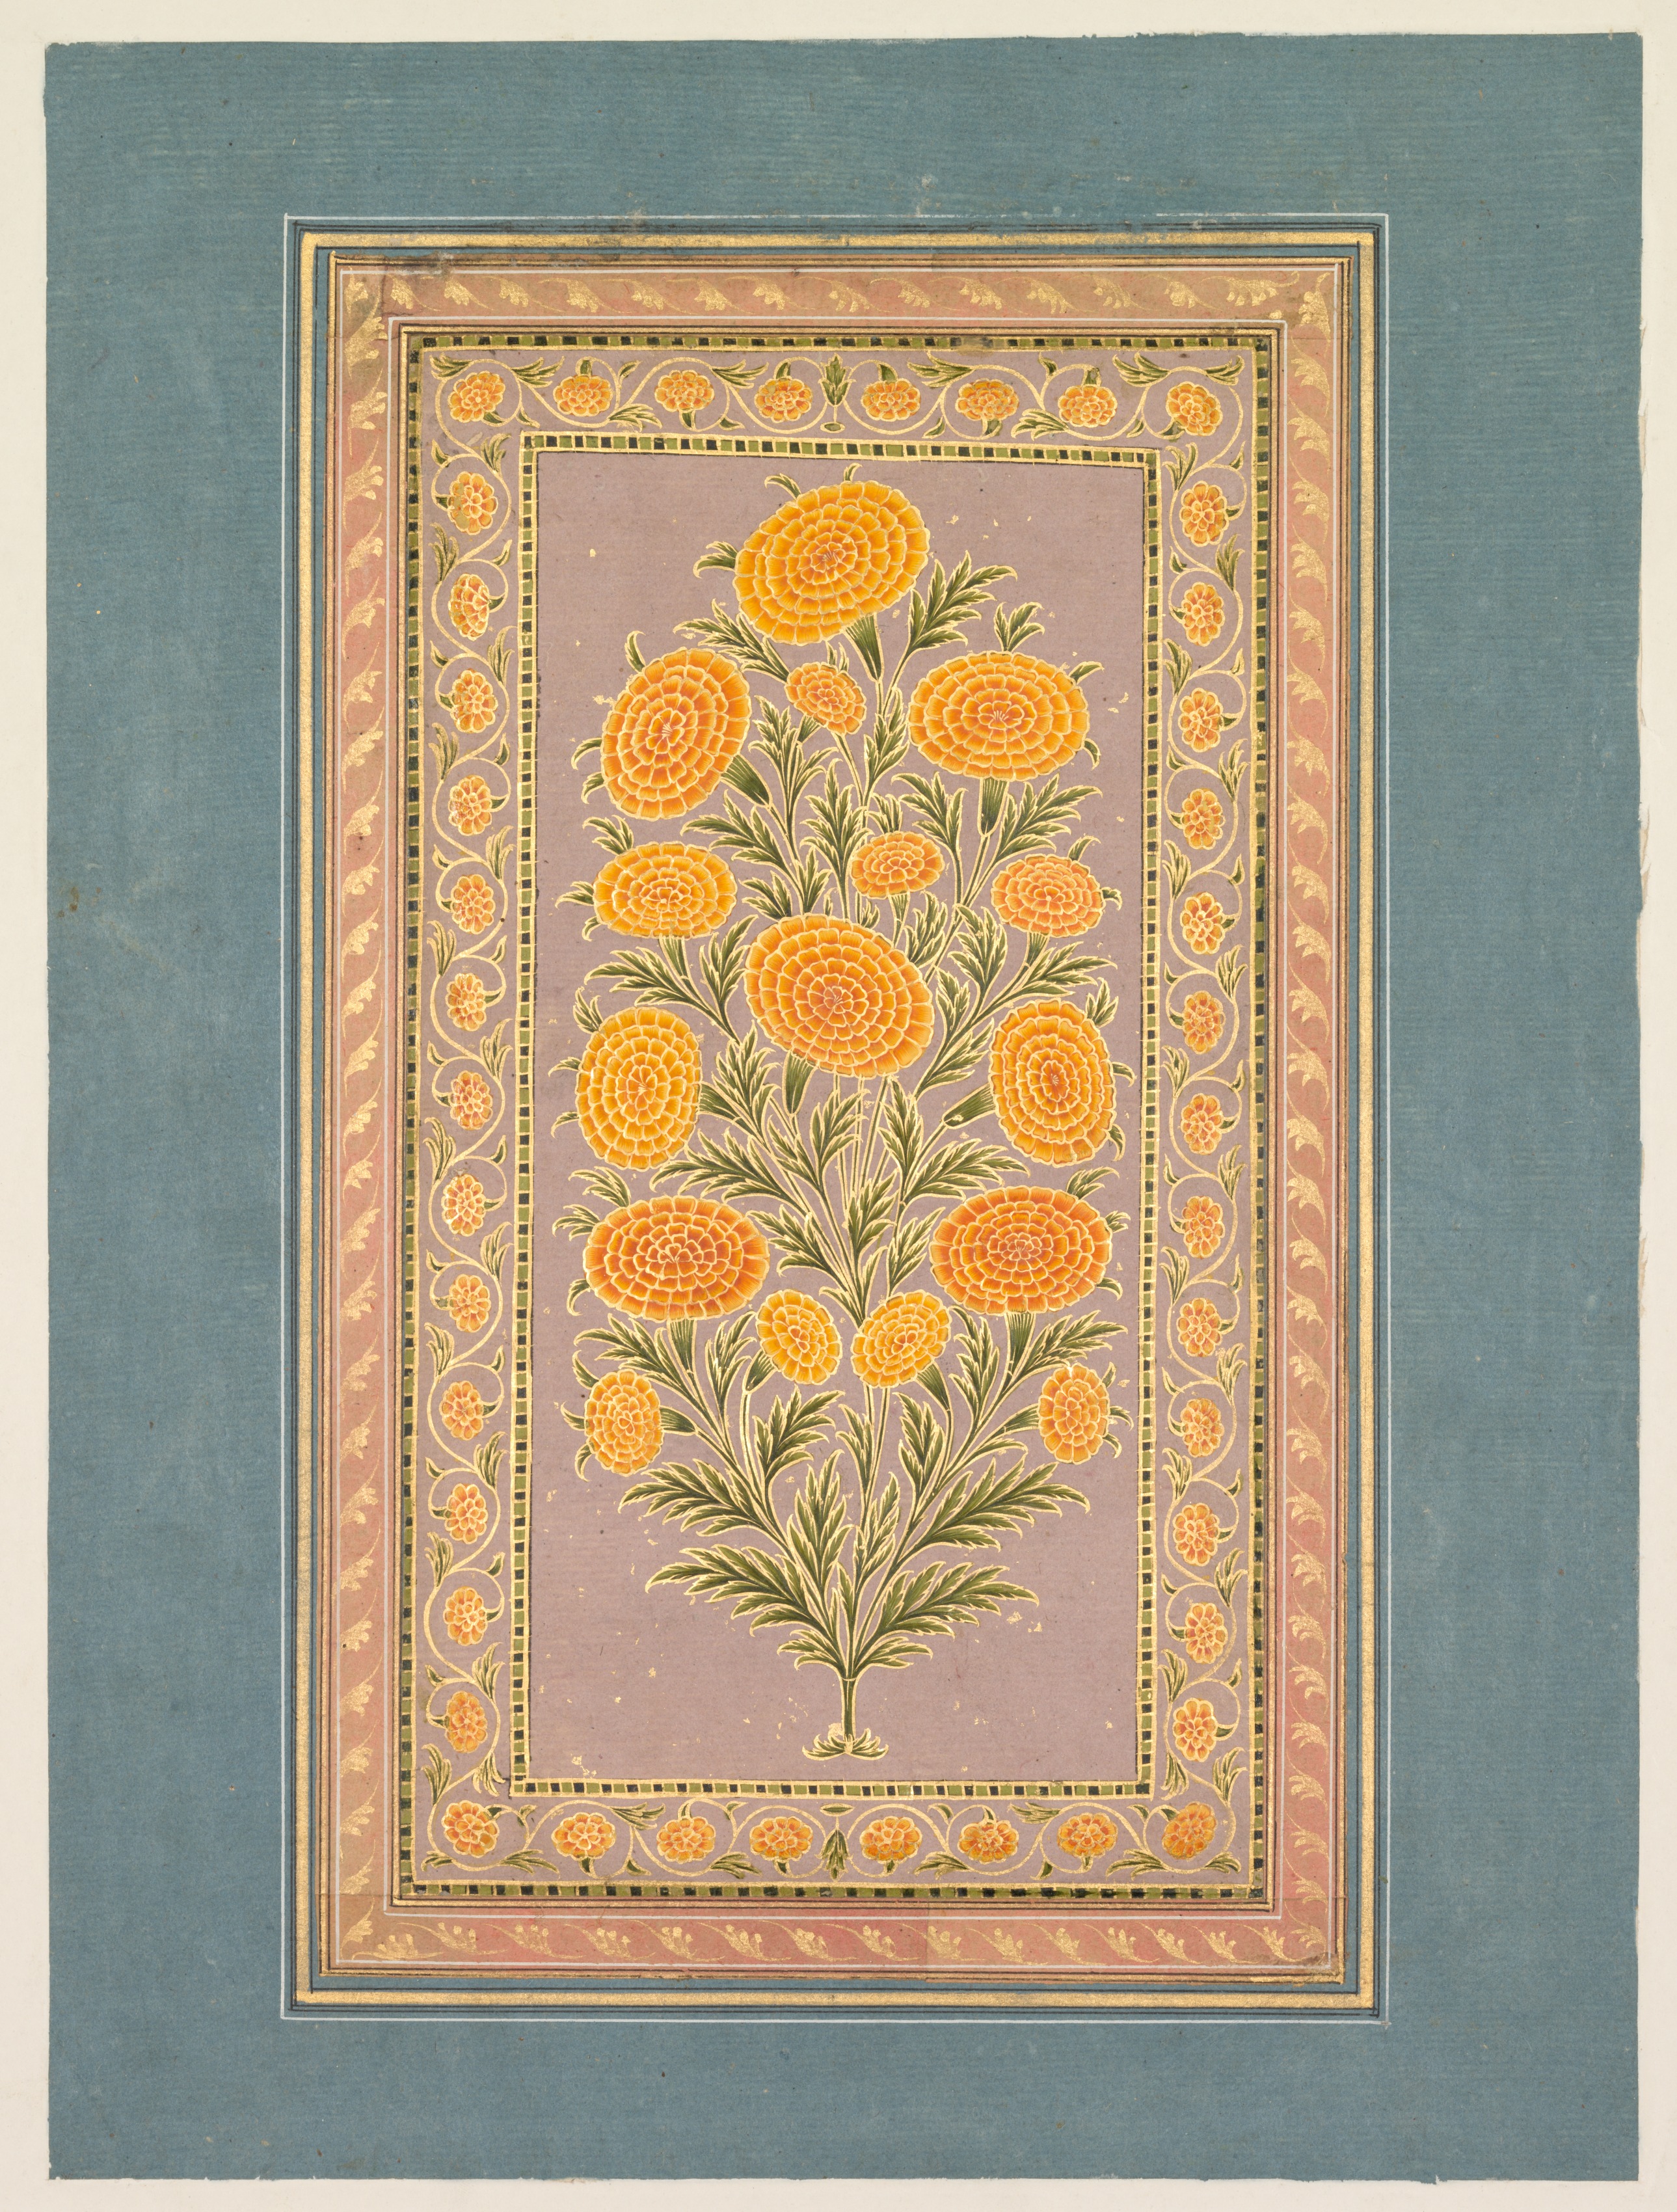 Souci en fleur by Artiste Inconnu - Vers 1765 - 33,1 x 24,9 cm Cleveland Museum of Art